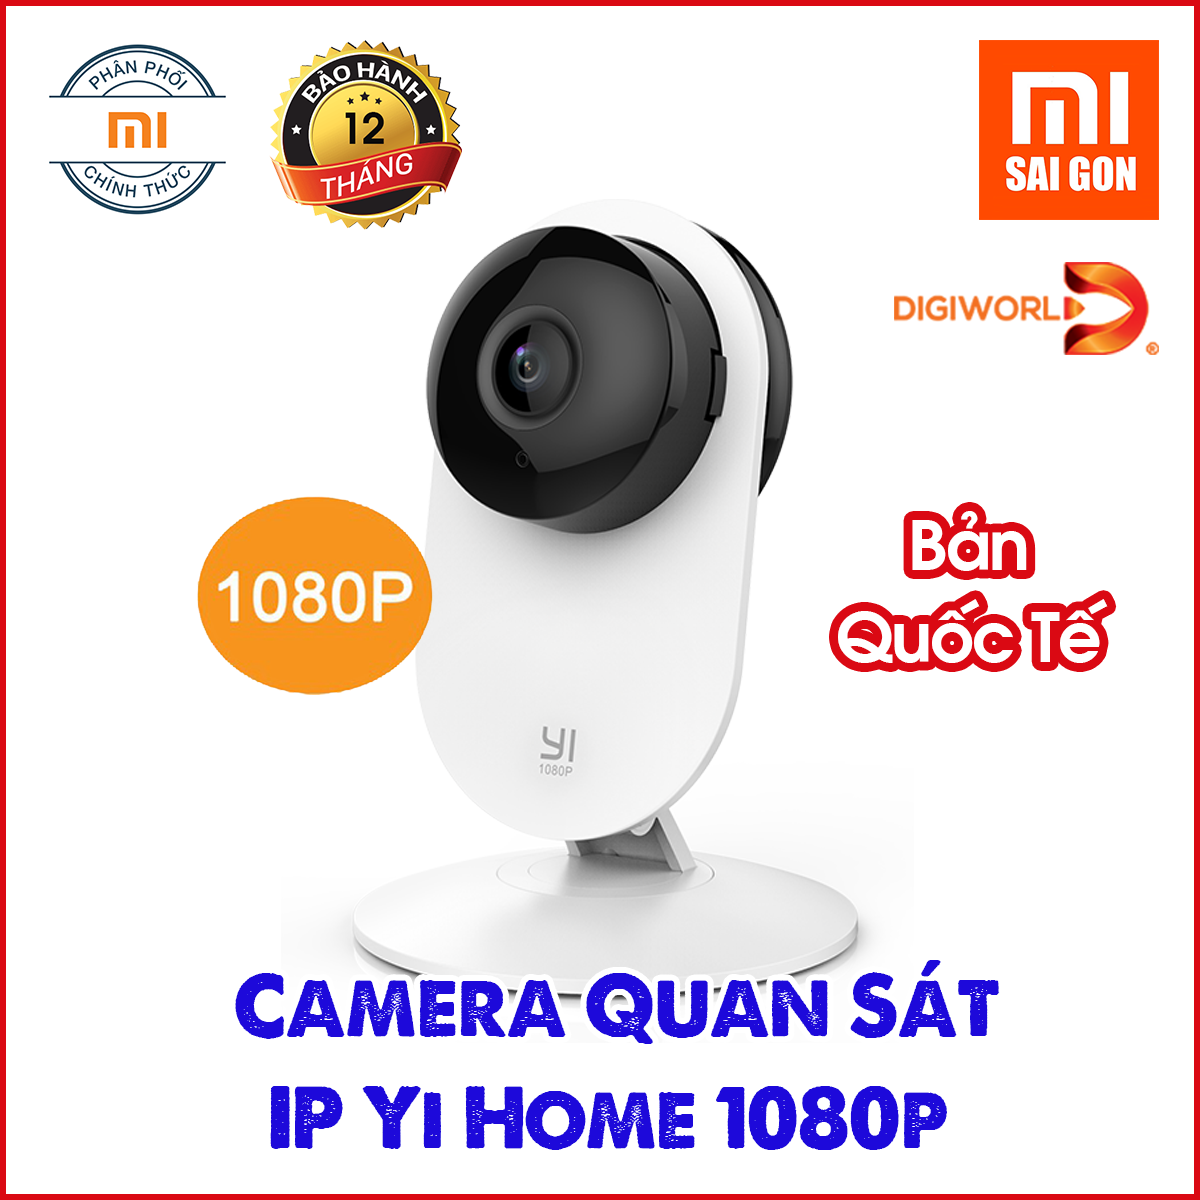 Camera Ip Yi Home 1080p nhìn đêm , góc nhìn 112 độ - Y20 - BẢN QUỐC TẾ- Digiworld phân phối